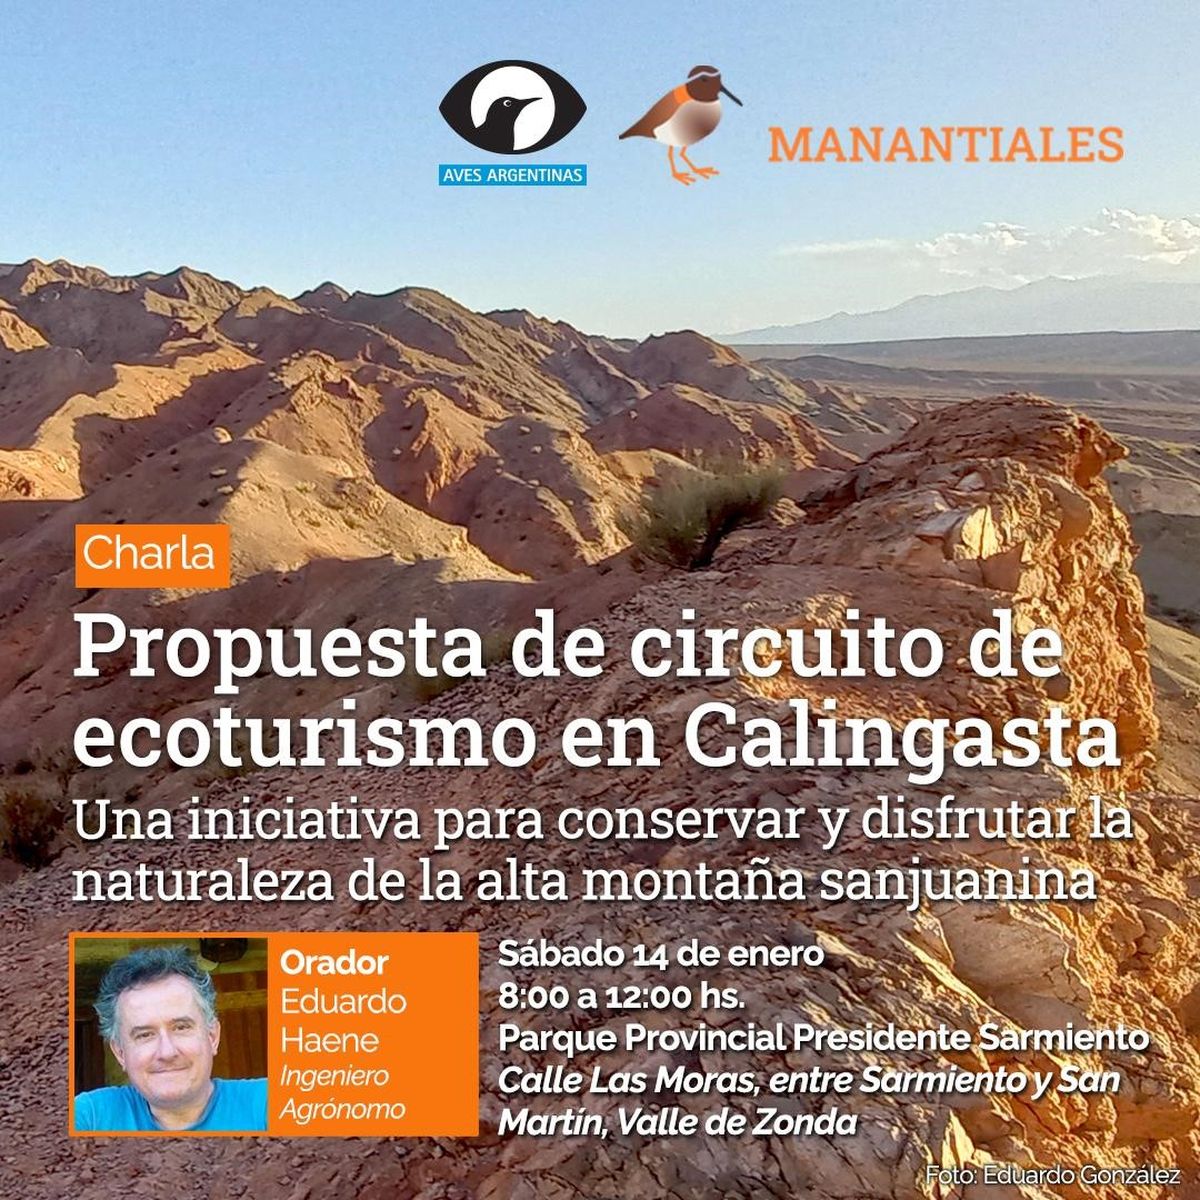 Llega una propuesta de circuito de ecoturismo en Calingasta